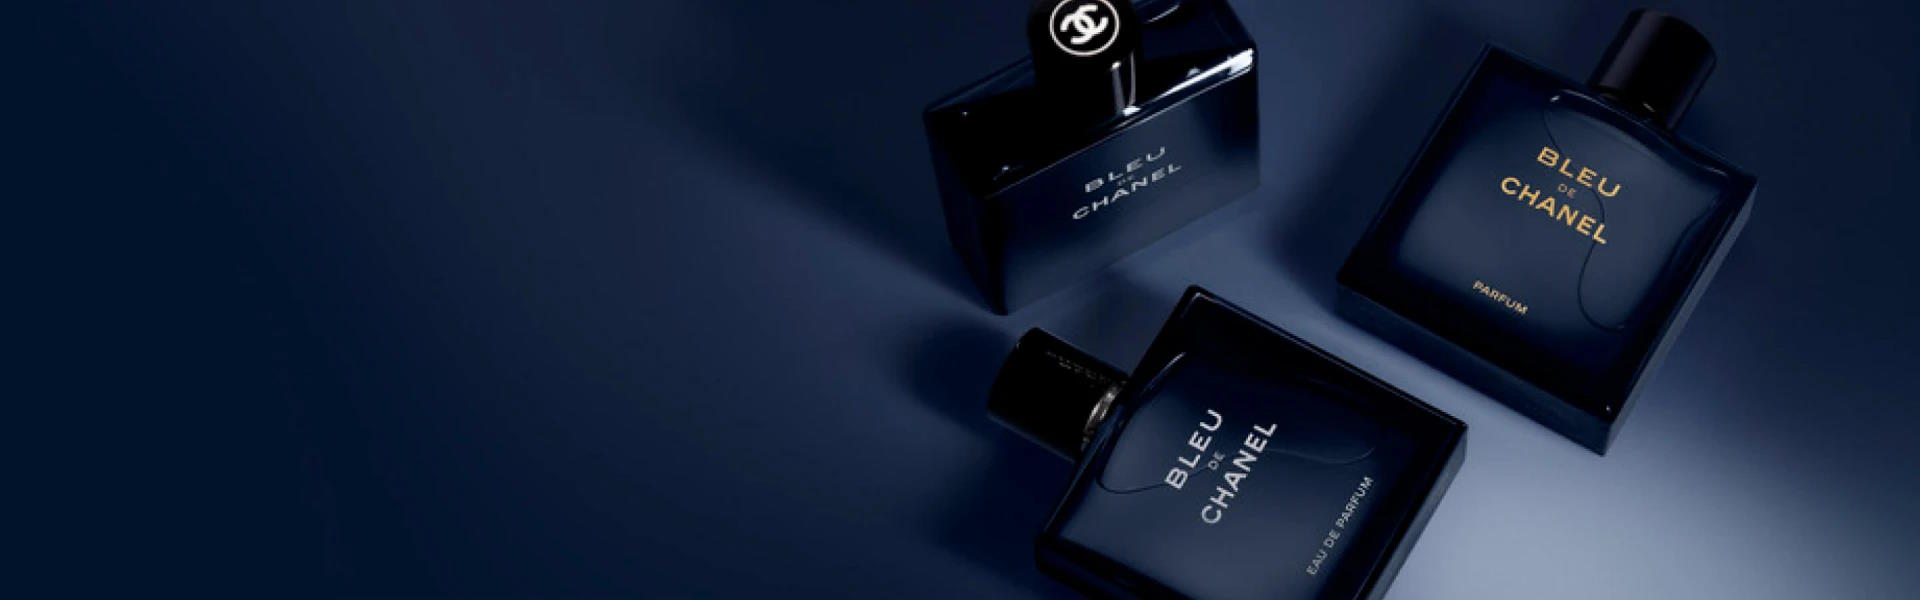 Trois flacons de parfum "Bleu de Chanel"